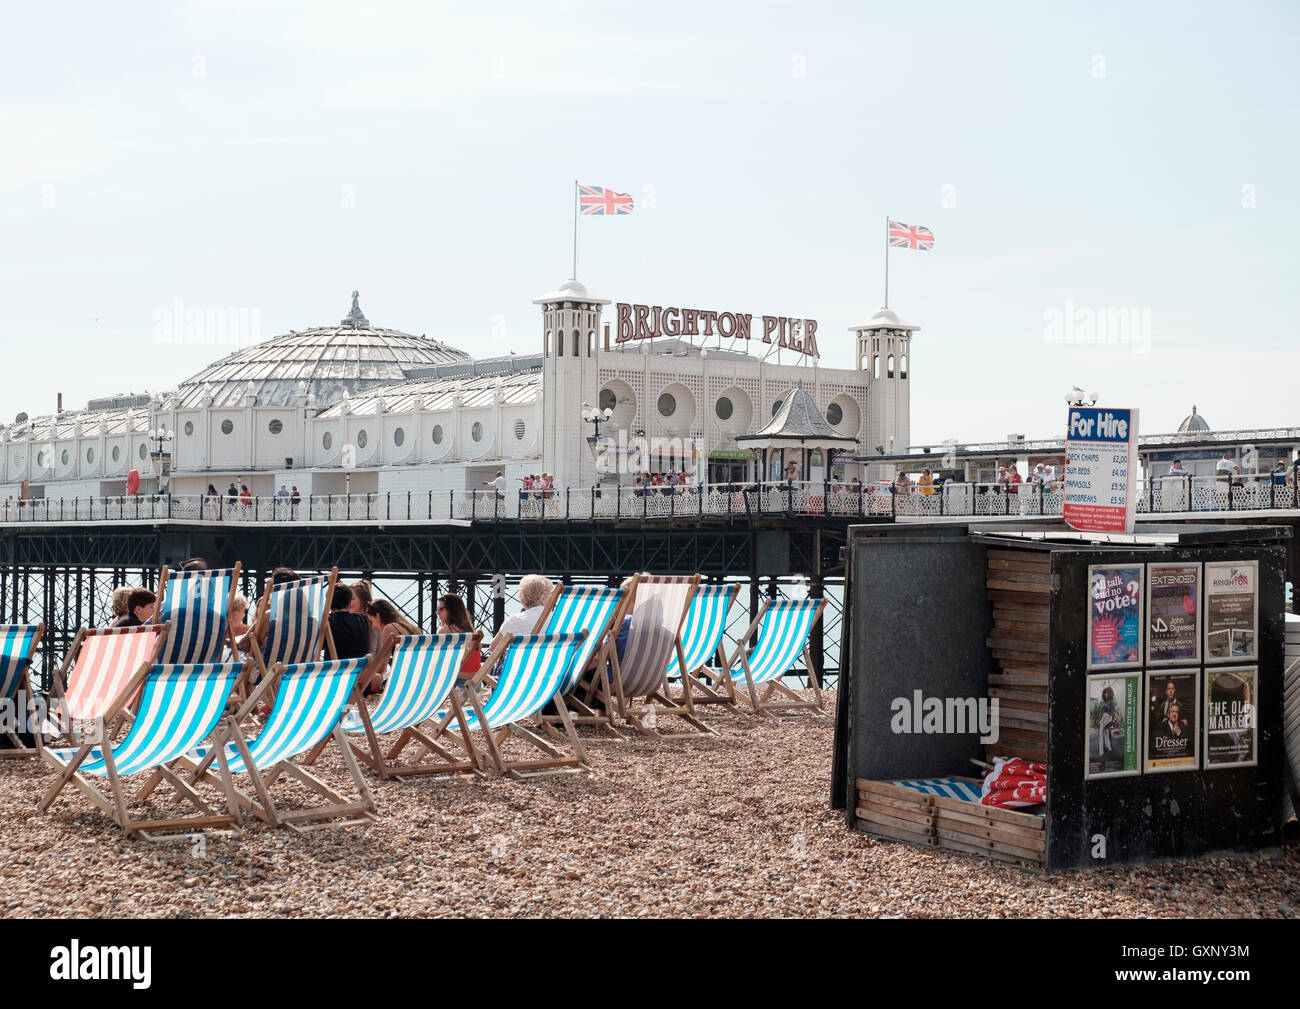 Pier von Brighton, UK - 13. September 2016: viele Liegestühle am Strand von Brighton. Stockfoto